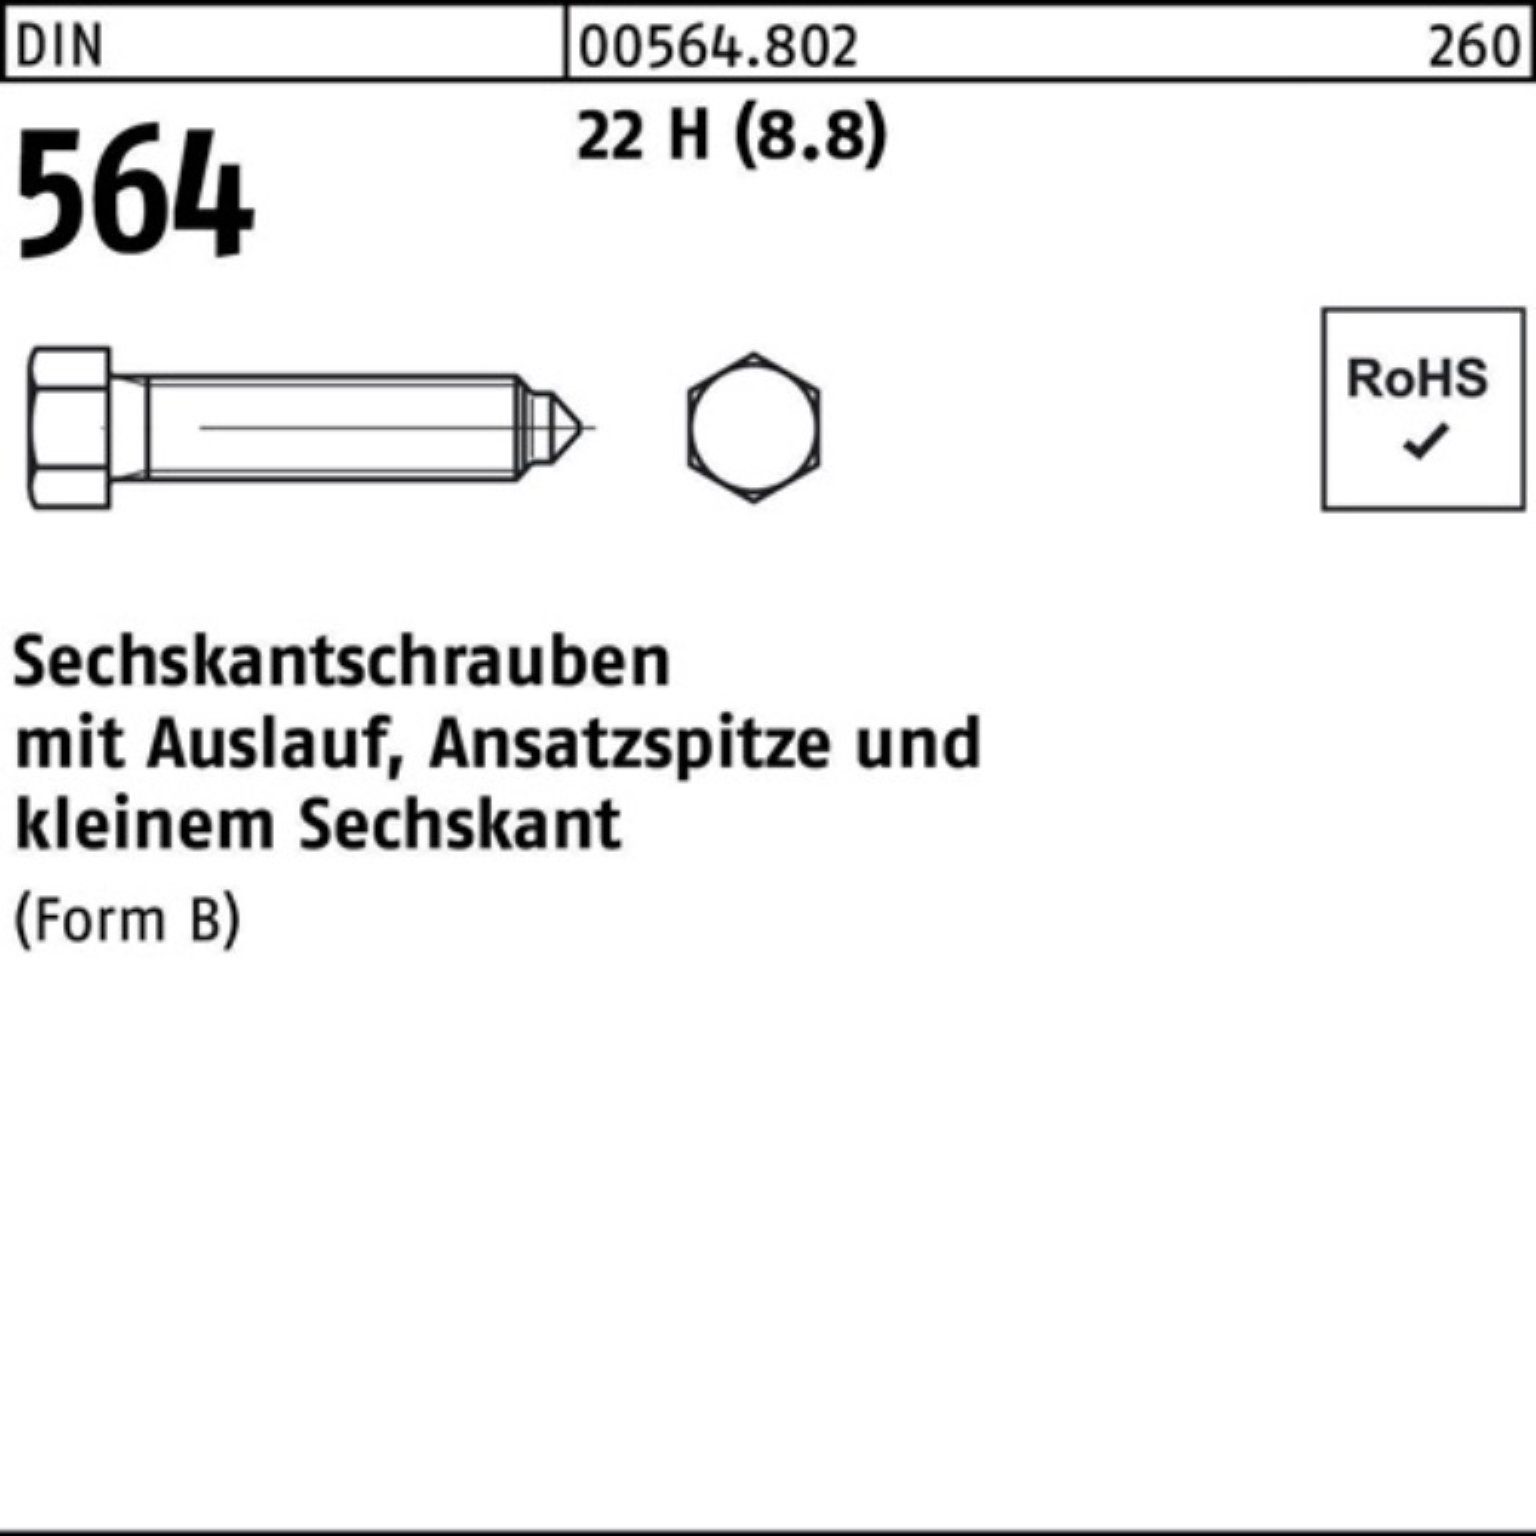 Reyher Sechskantschraube 100er Pack Sechskantschraube DIN 564 Ansatzspitze/Auslauf BM 10x 25 22